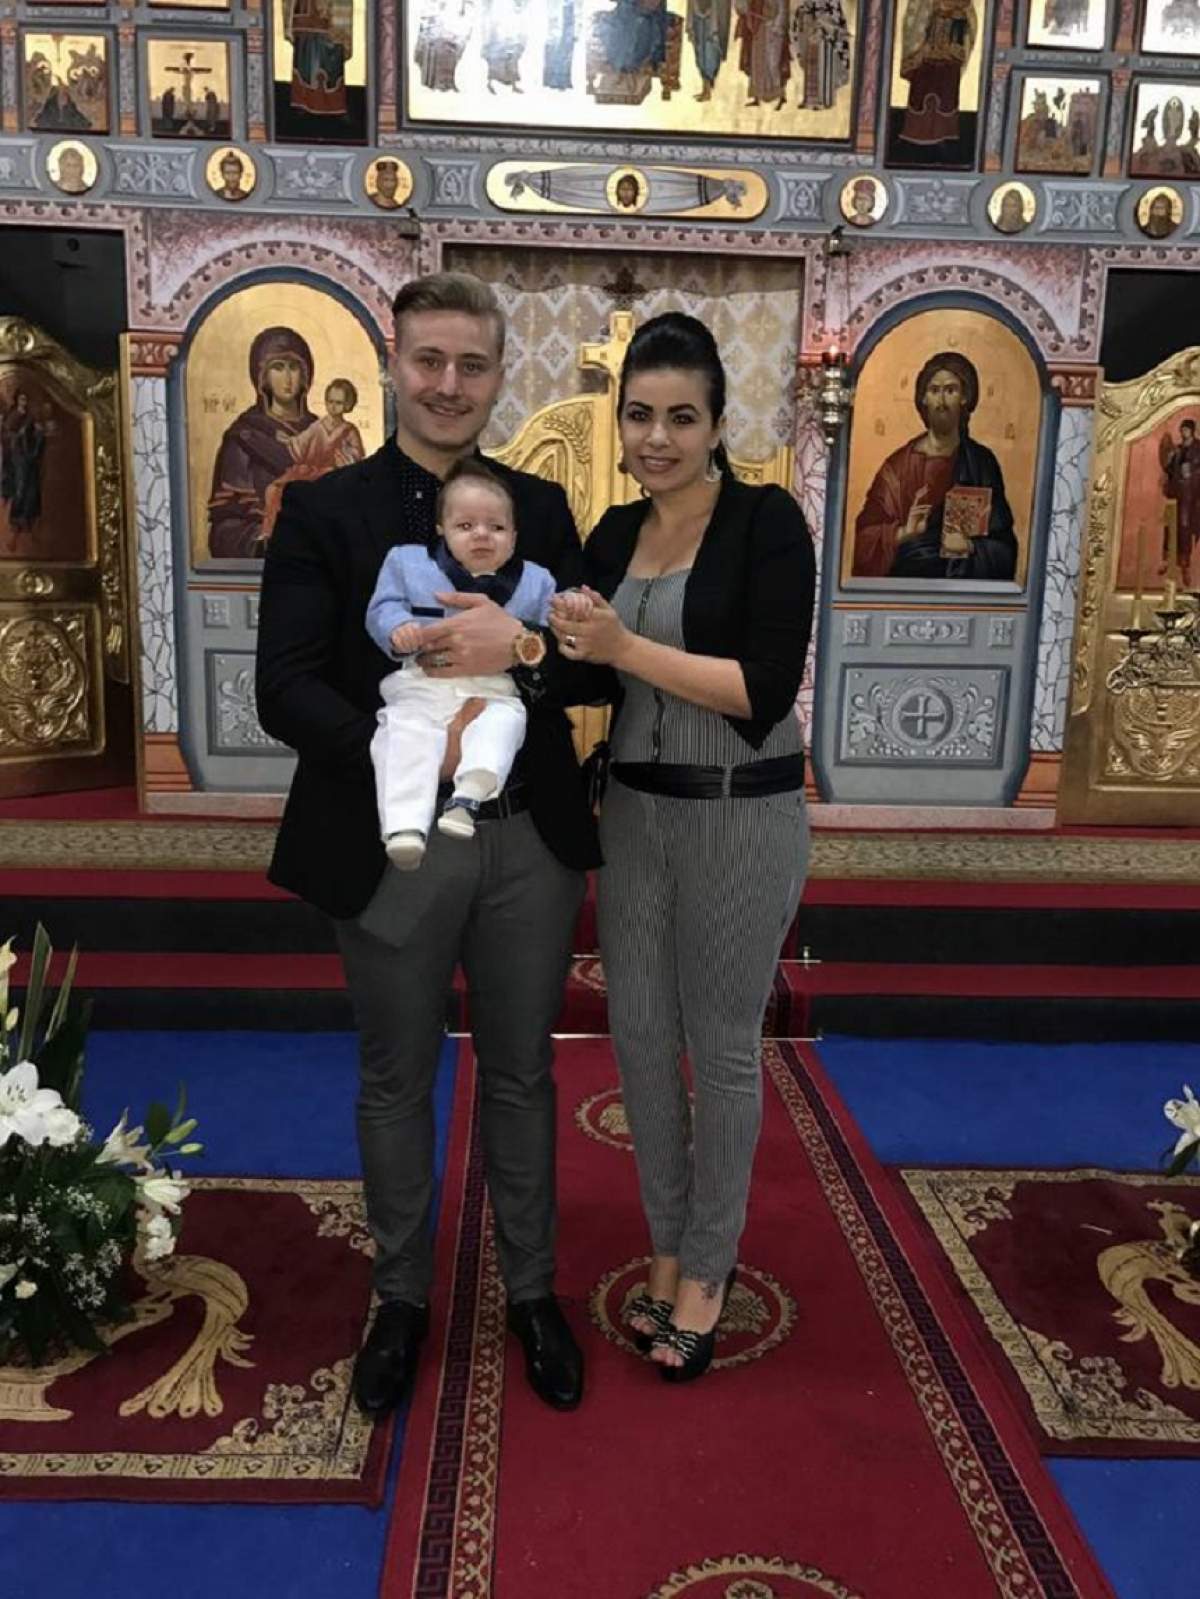 FOTO / Oana şi Cosmin, foşti concurenţi la "Mireasă pentru fiul meu", şi-au botezat băieţelul! Cum au apărut în biserică